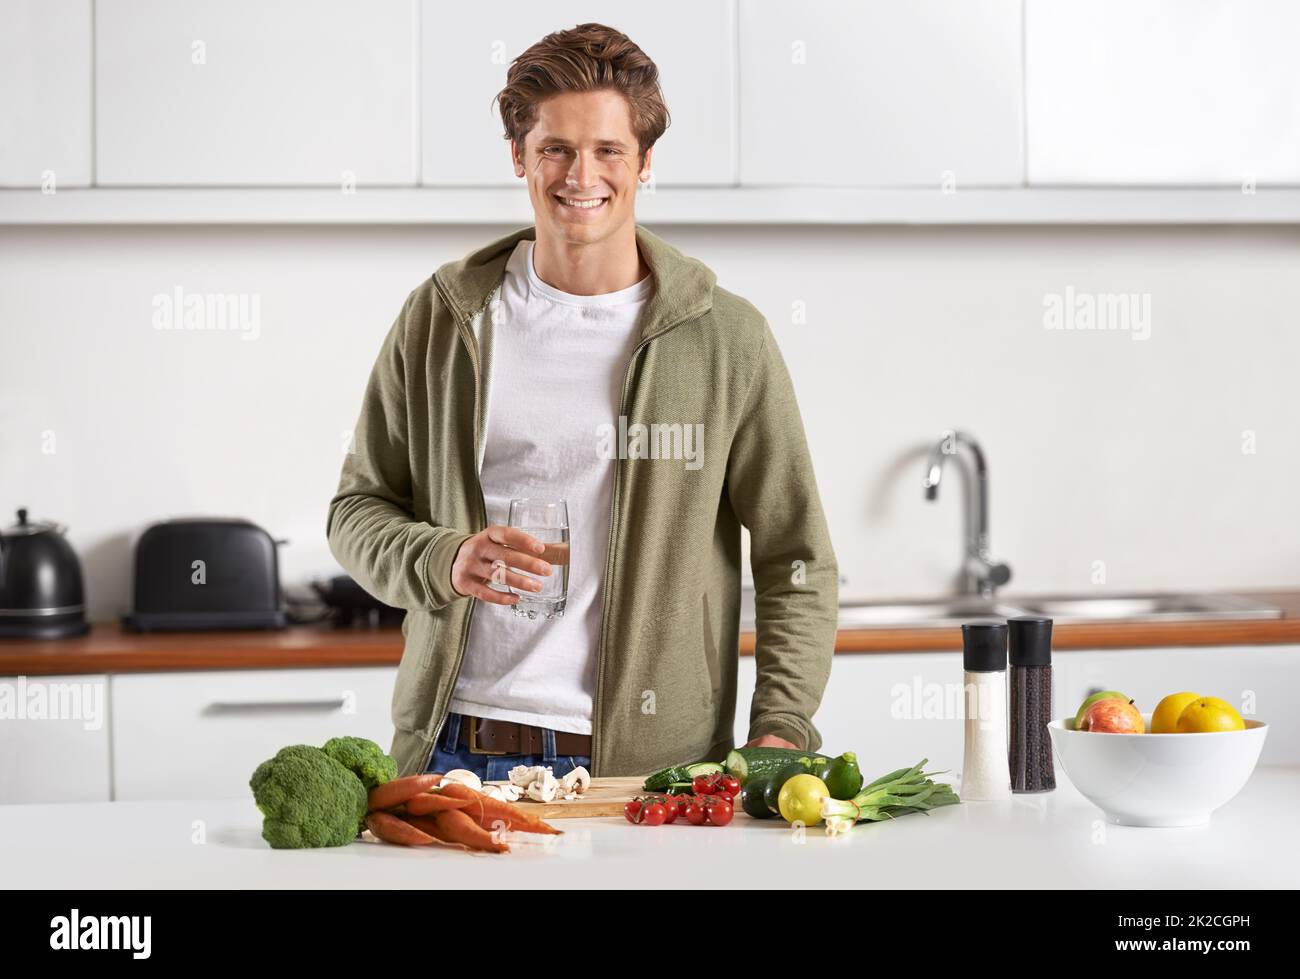 Assicurandosi che rimanga sano e nutrito. Ritratto di un giovane che prepara la cena. Foto Stock